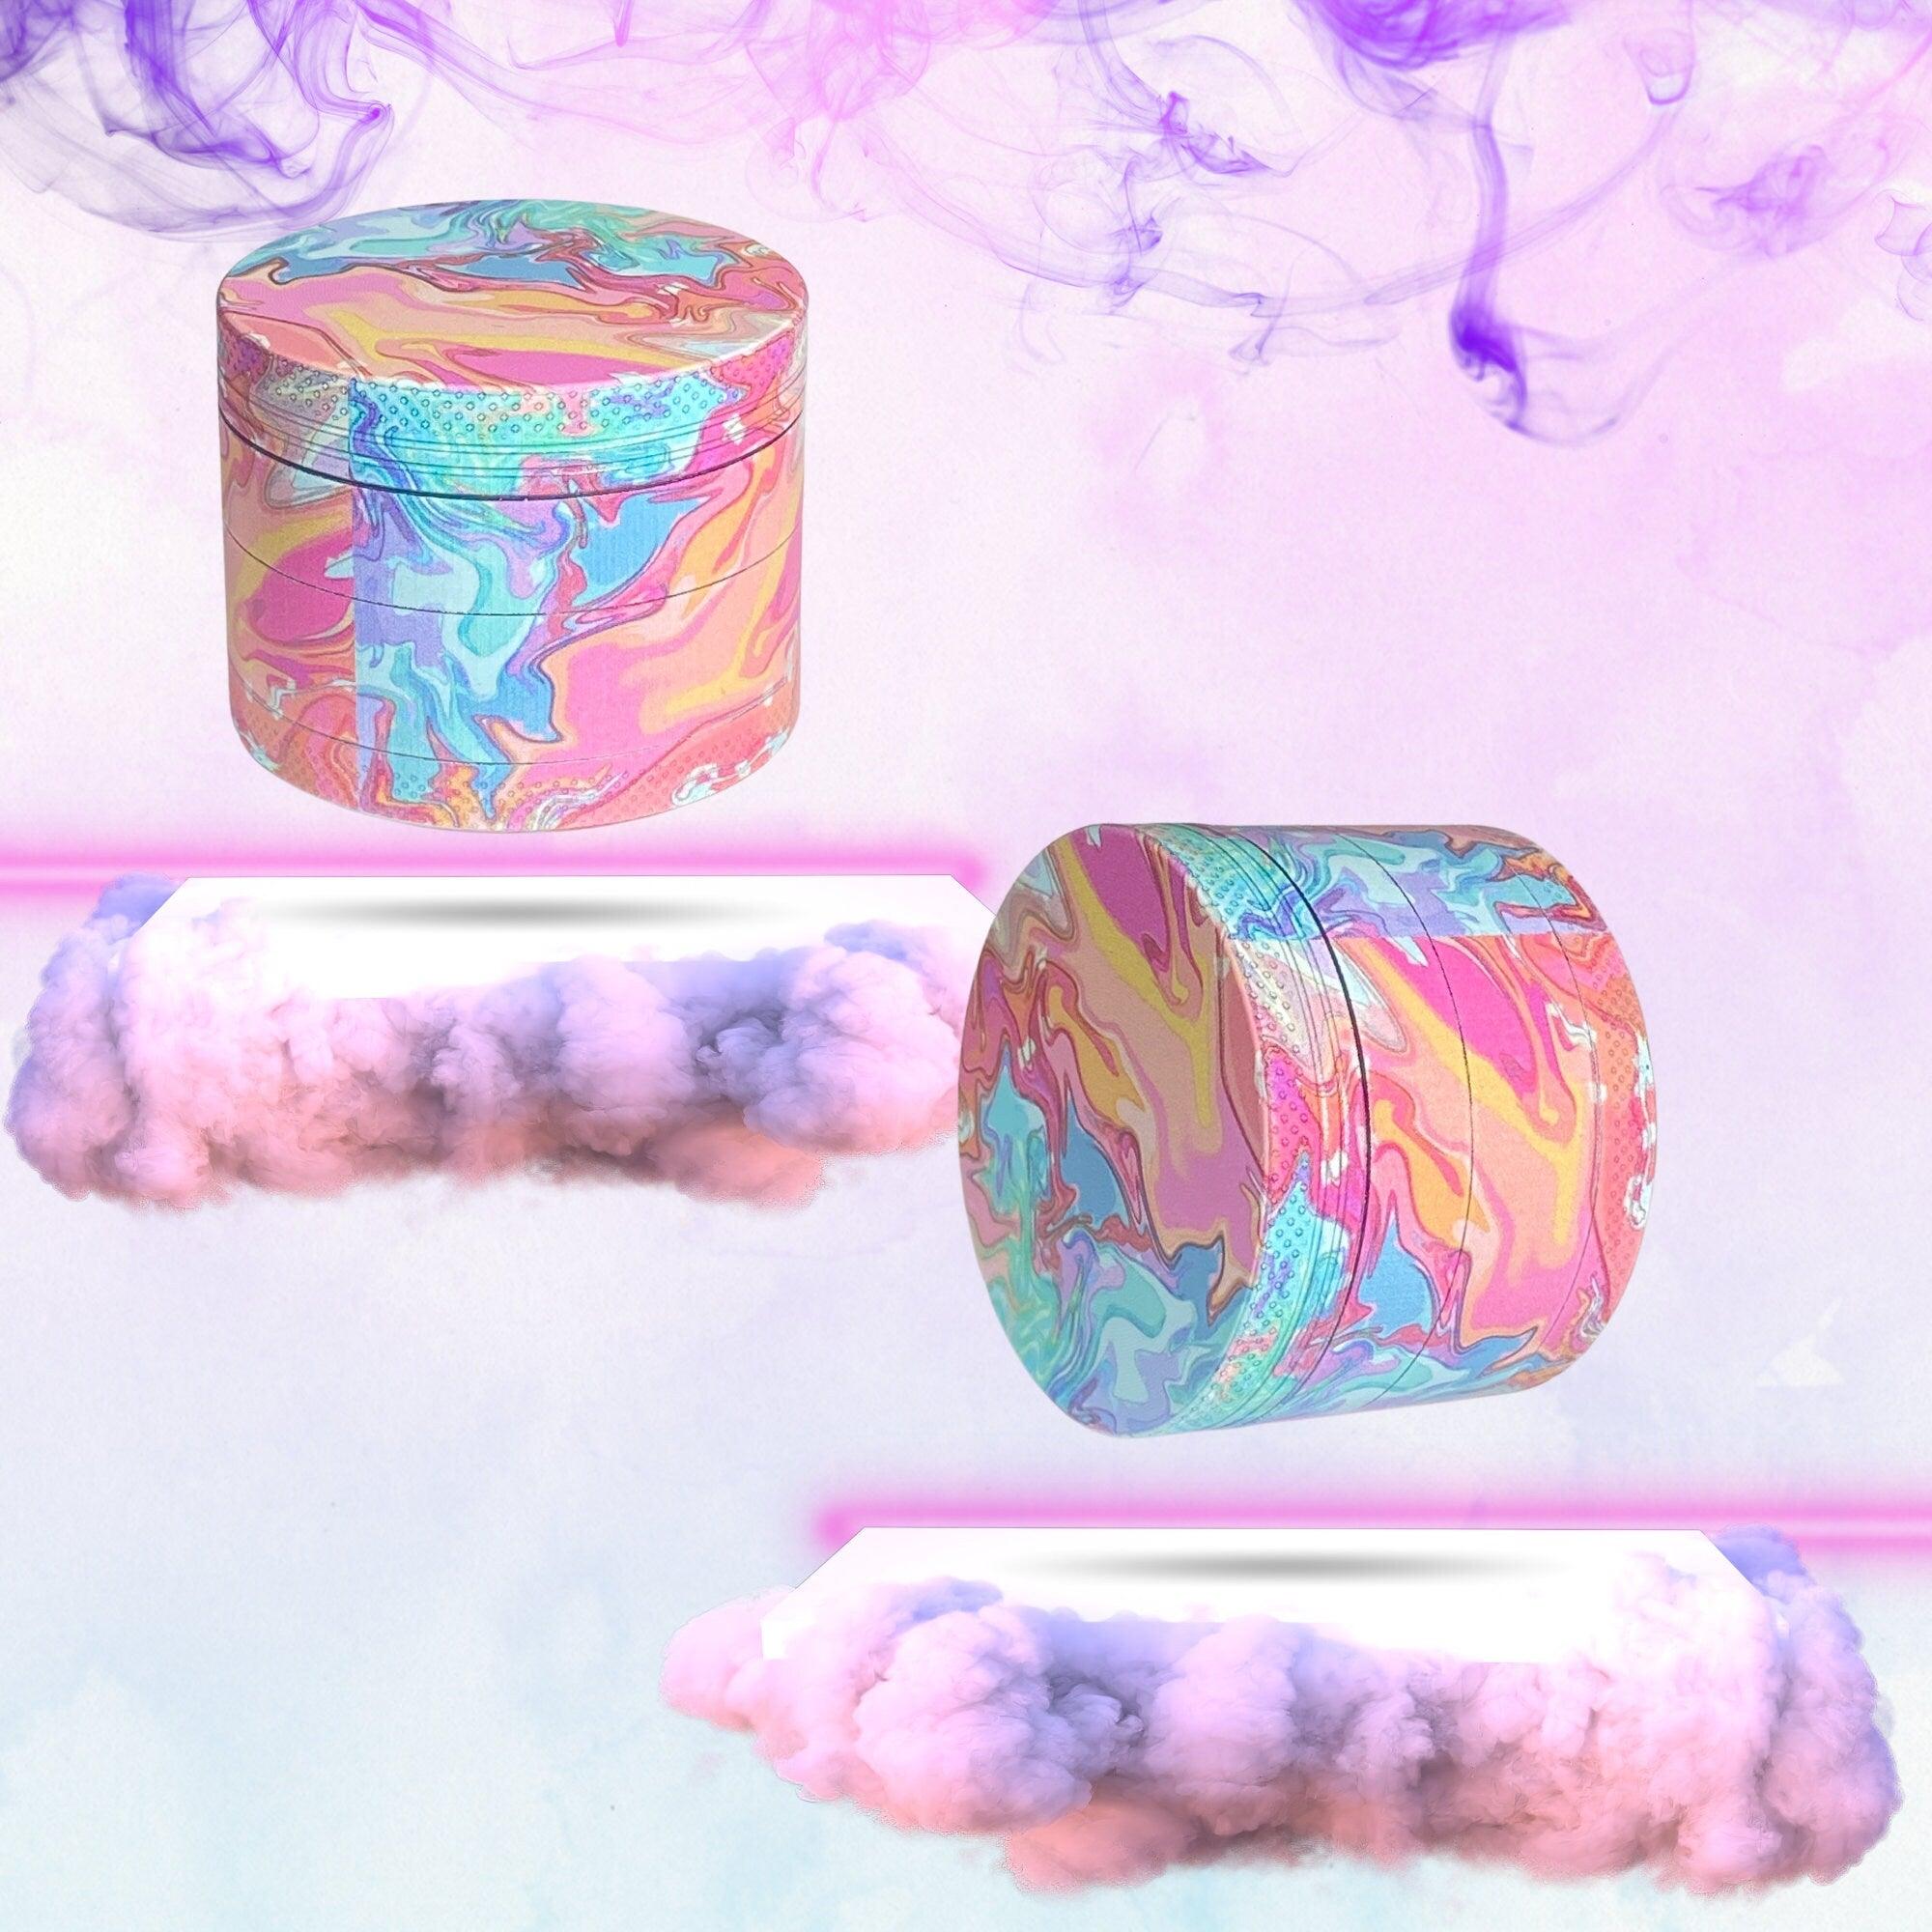 Cute Weed Grinder | cannabis grinders, weed accessories, 4 piece grinder, metal grinder, cannabis, Pink Psychedelic Trippy Herb Girly